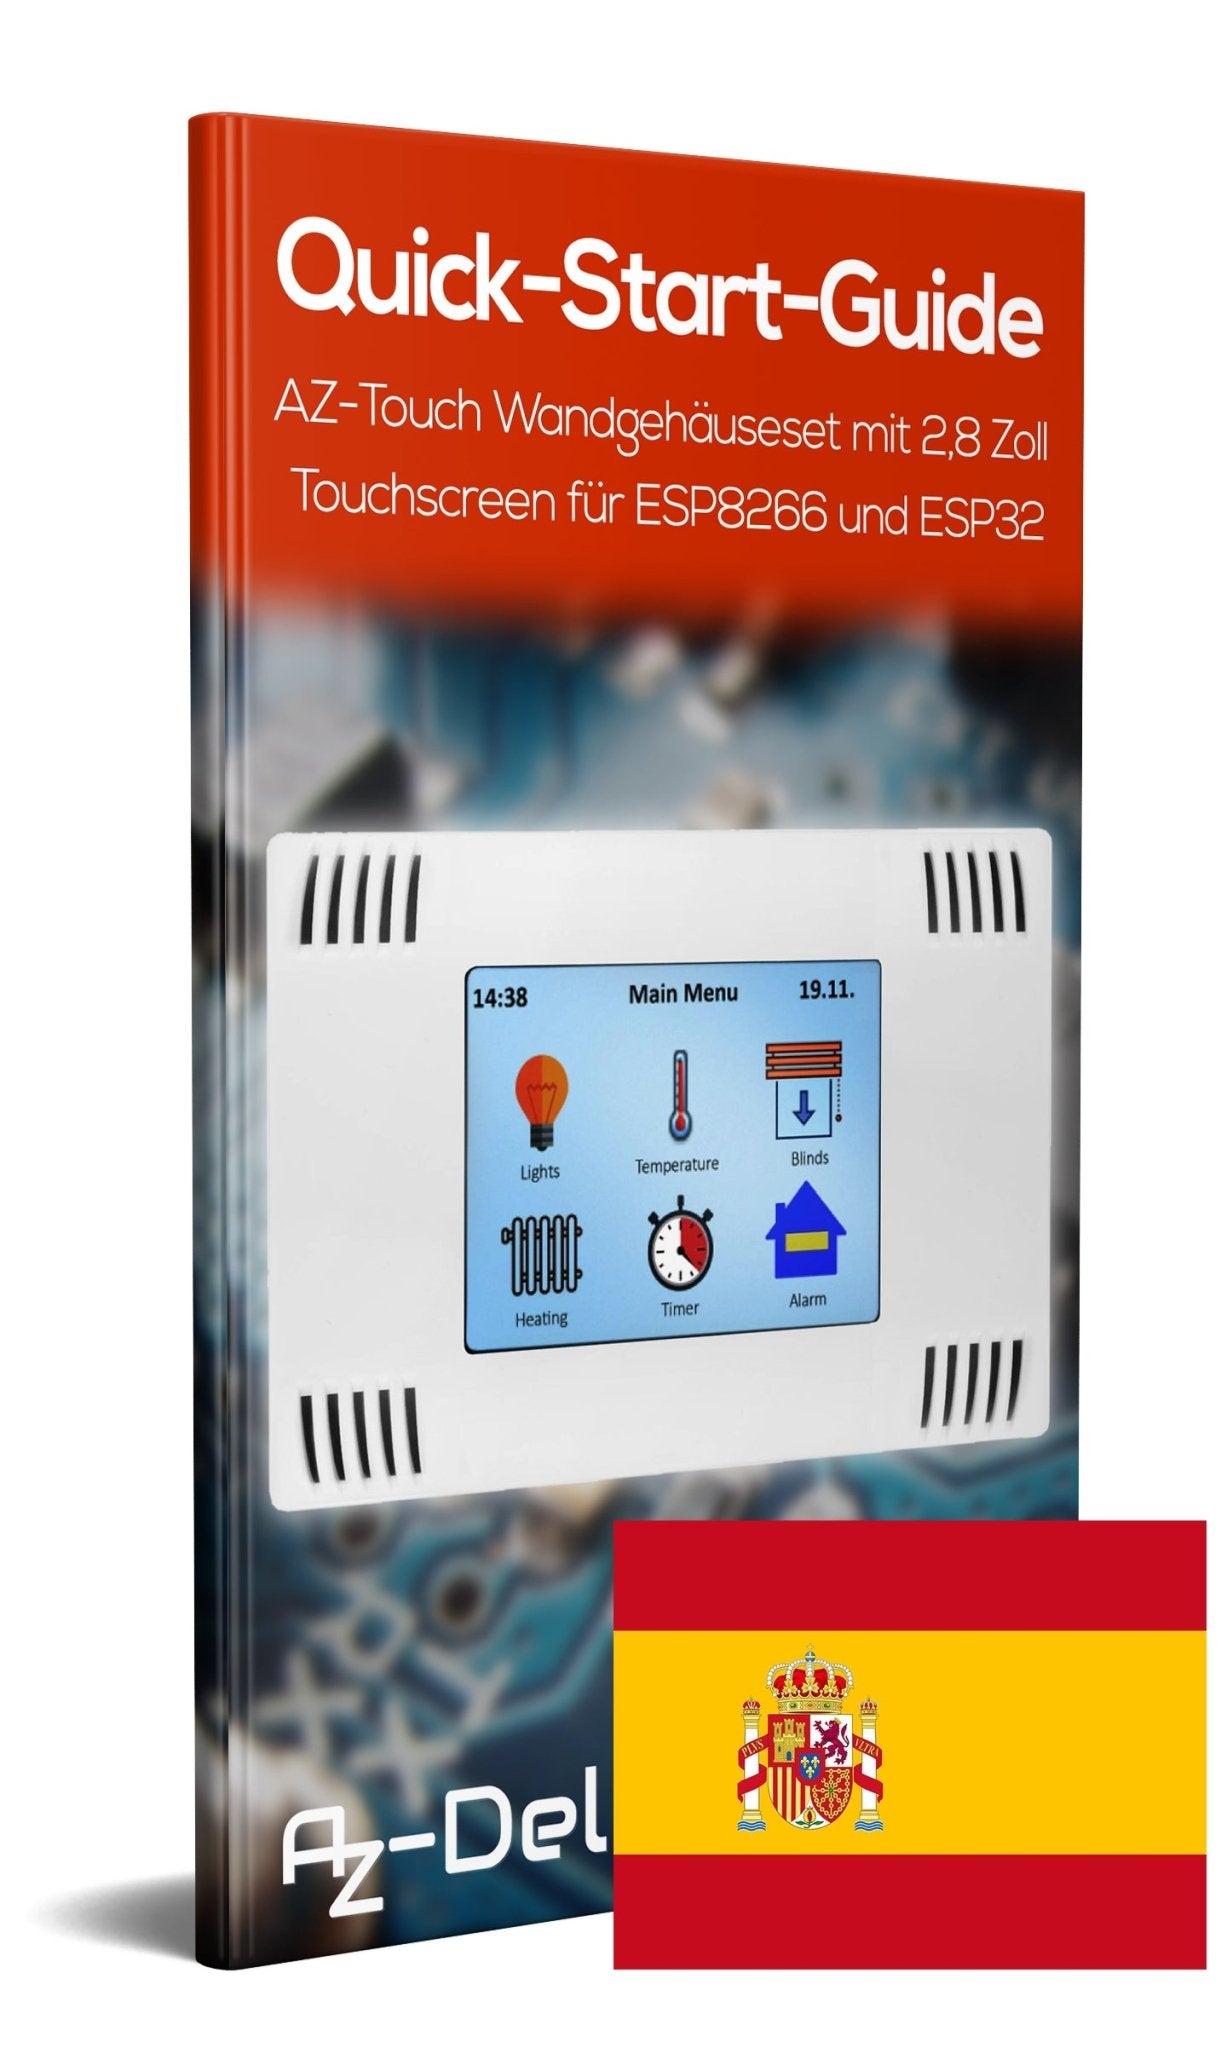 AZ-Touch MOD Wandgehäuseset mit 2,8 Zoll Touchscreen für ESP8266 und ESP32 - AZ-Delivery